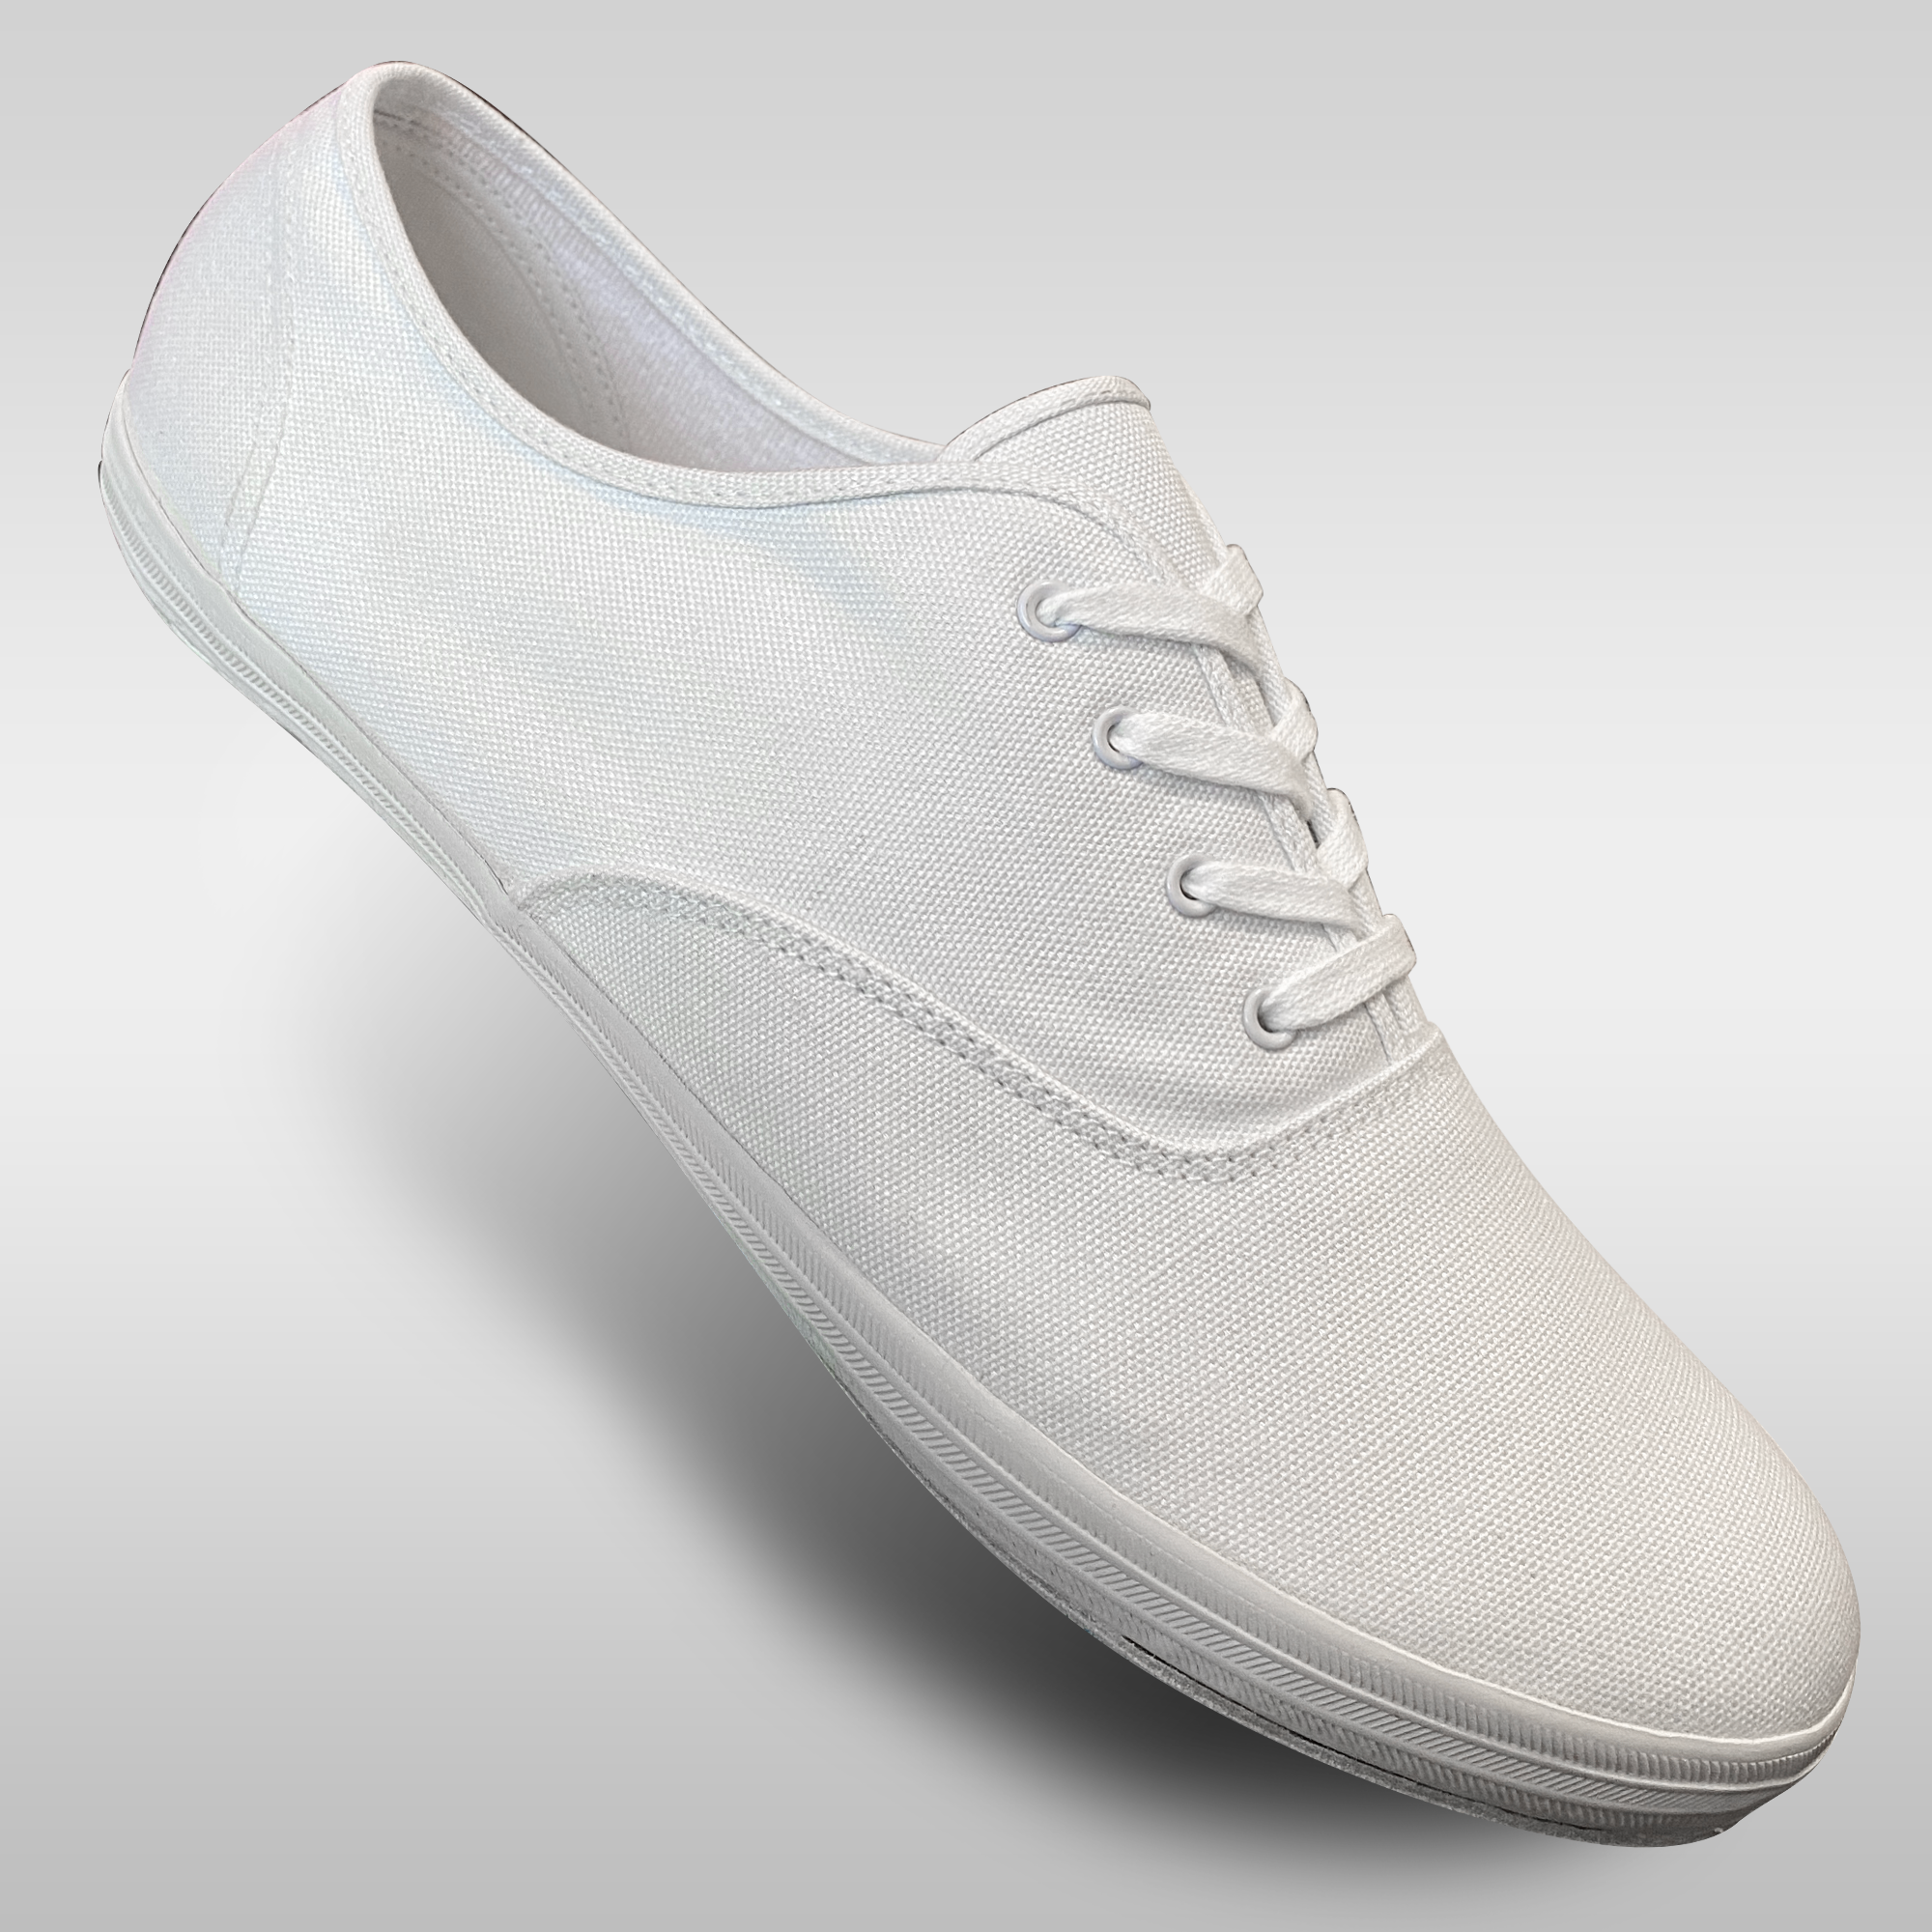 Man Dance Shoes | Dance Shoes For Men | Buy Men Dance Shoes In Capezio